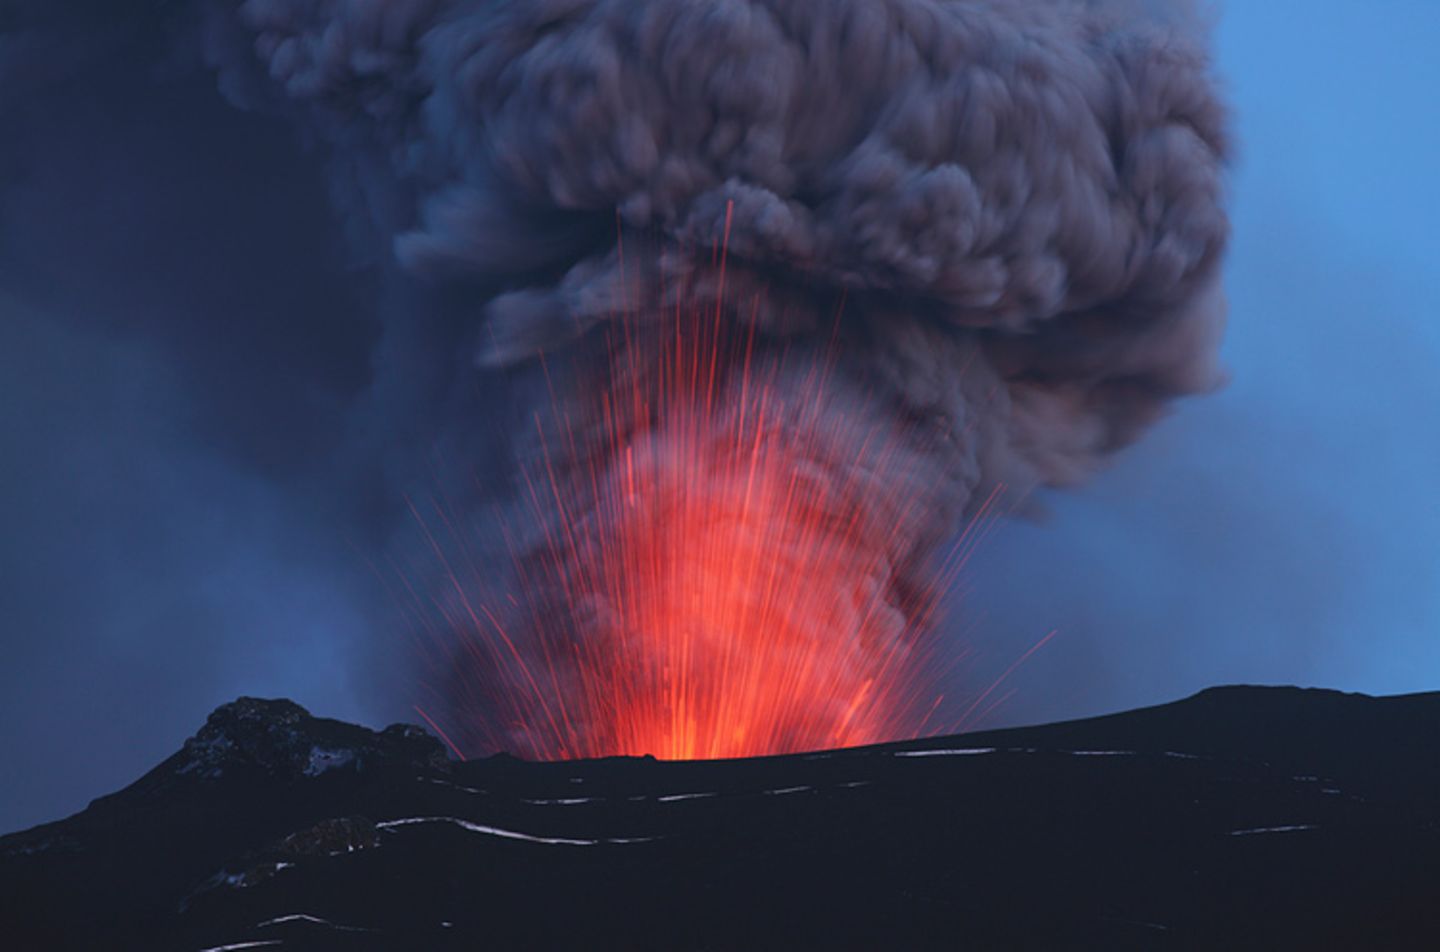 Kurz erklärt: Dass ein Vulkan bald ausbrechen wird, kündigen erste Signale an: Der Berg erzittert, Gestein, Wasserdampf und erste Aschewolken treten aus